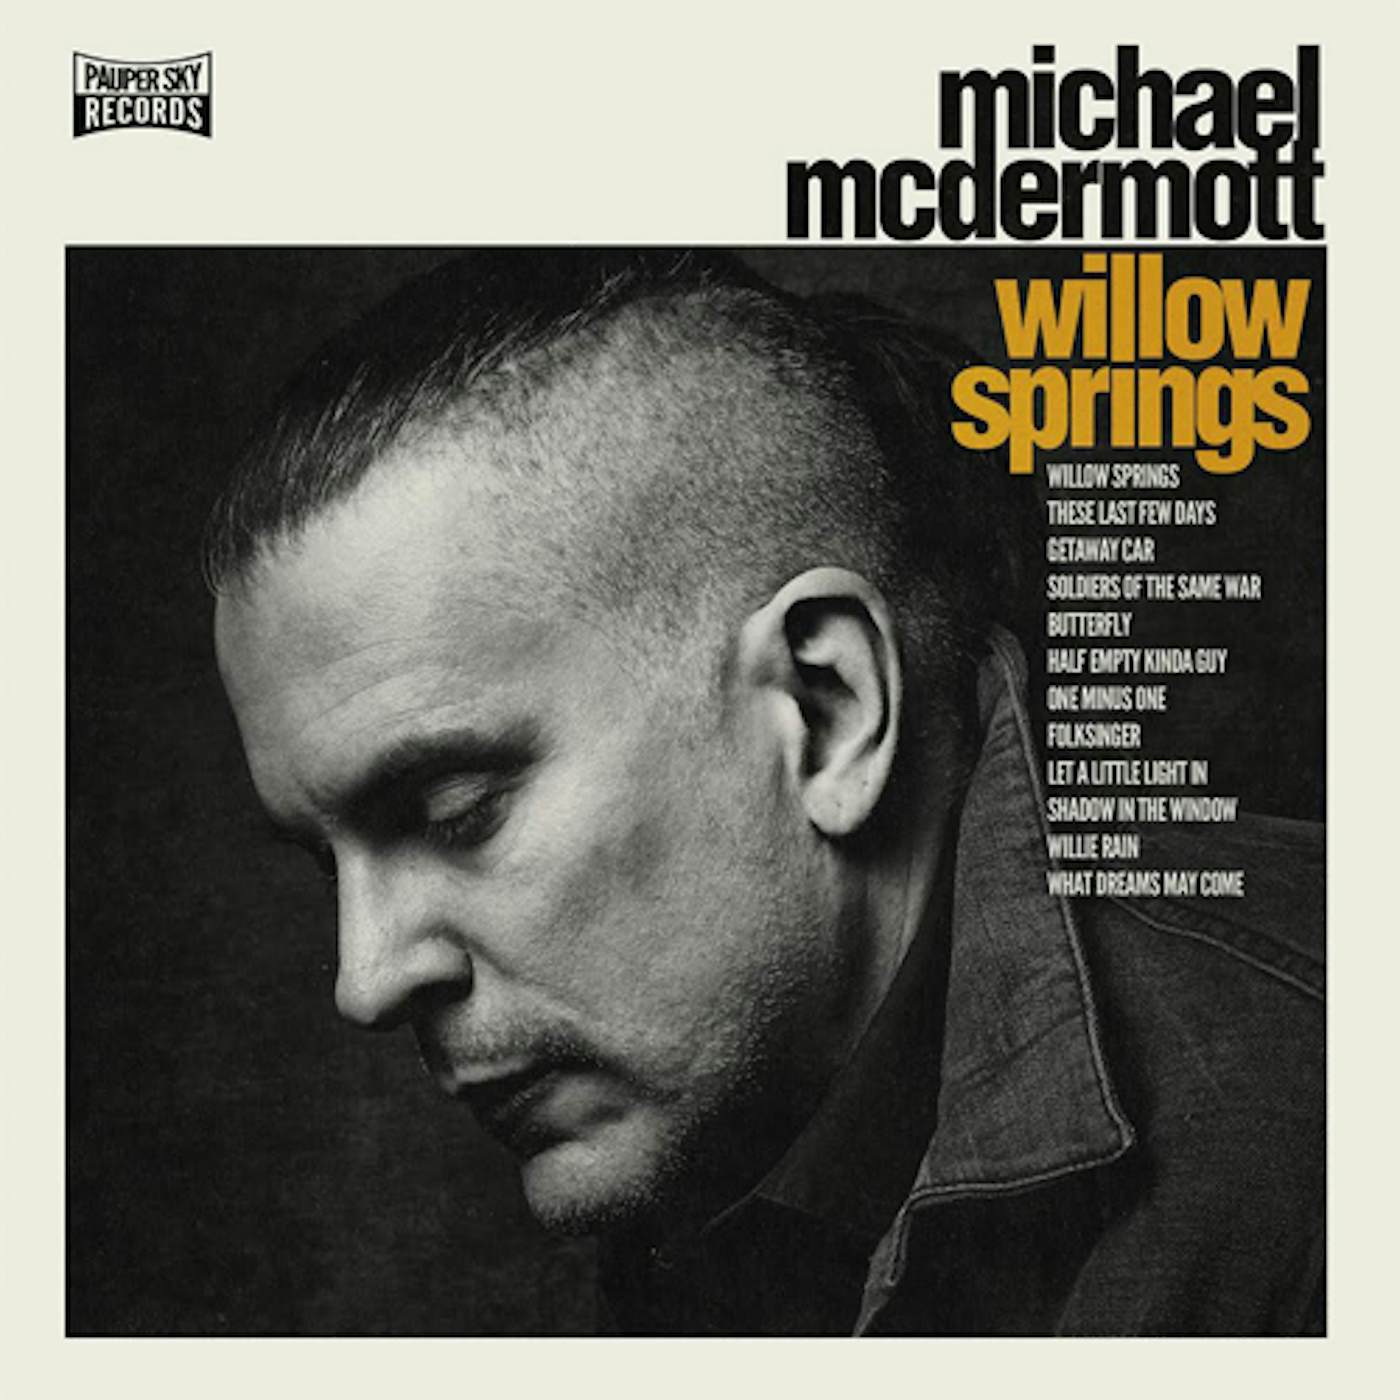 Michael McDermott WILLOW SPRINGS CD